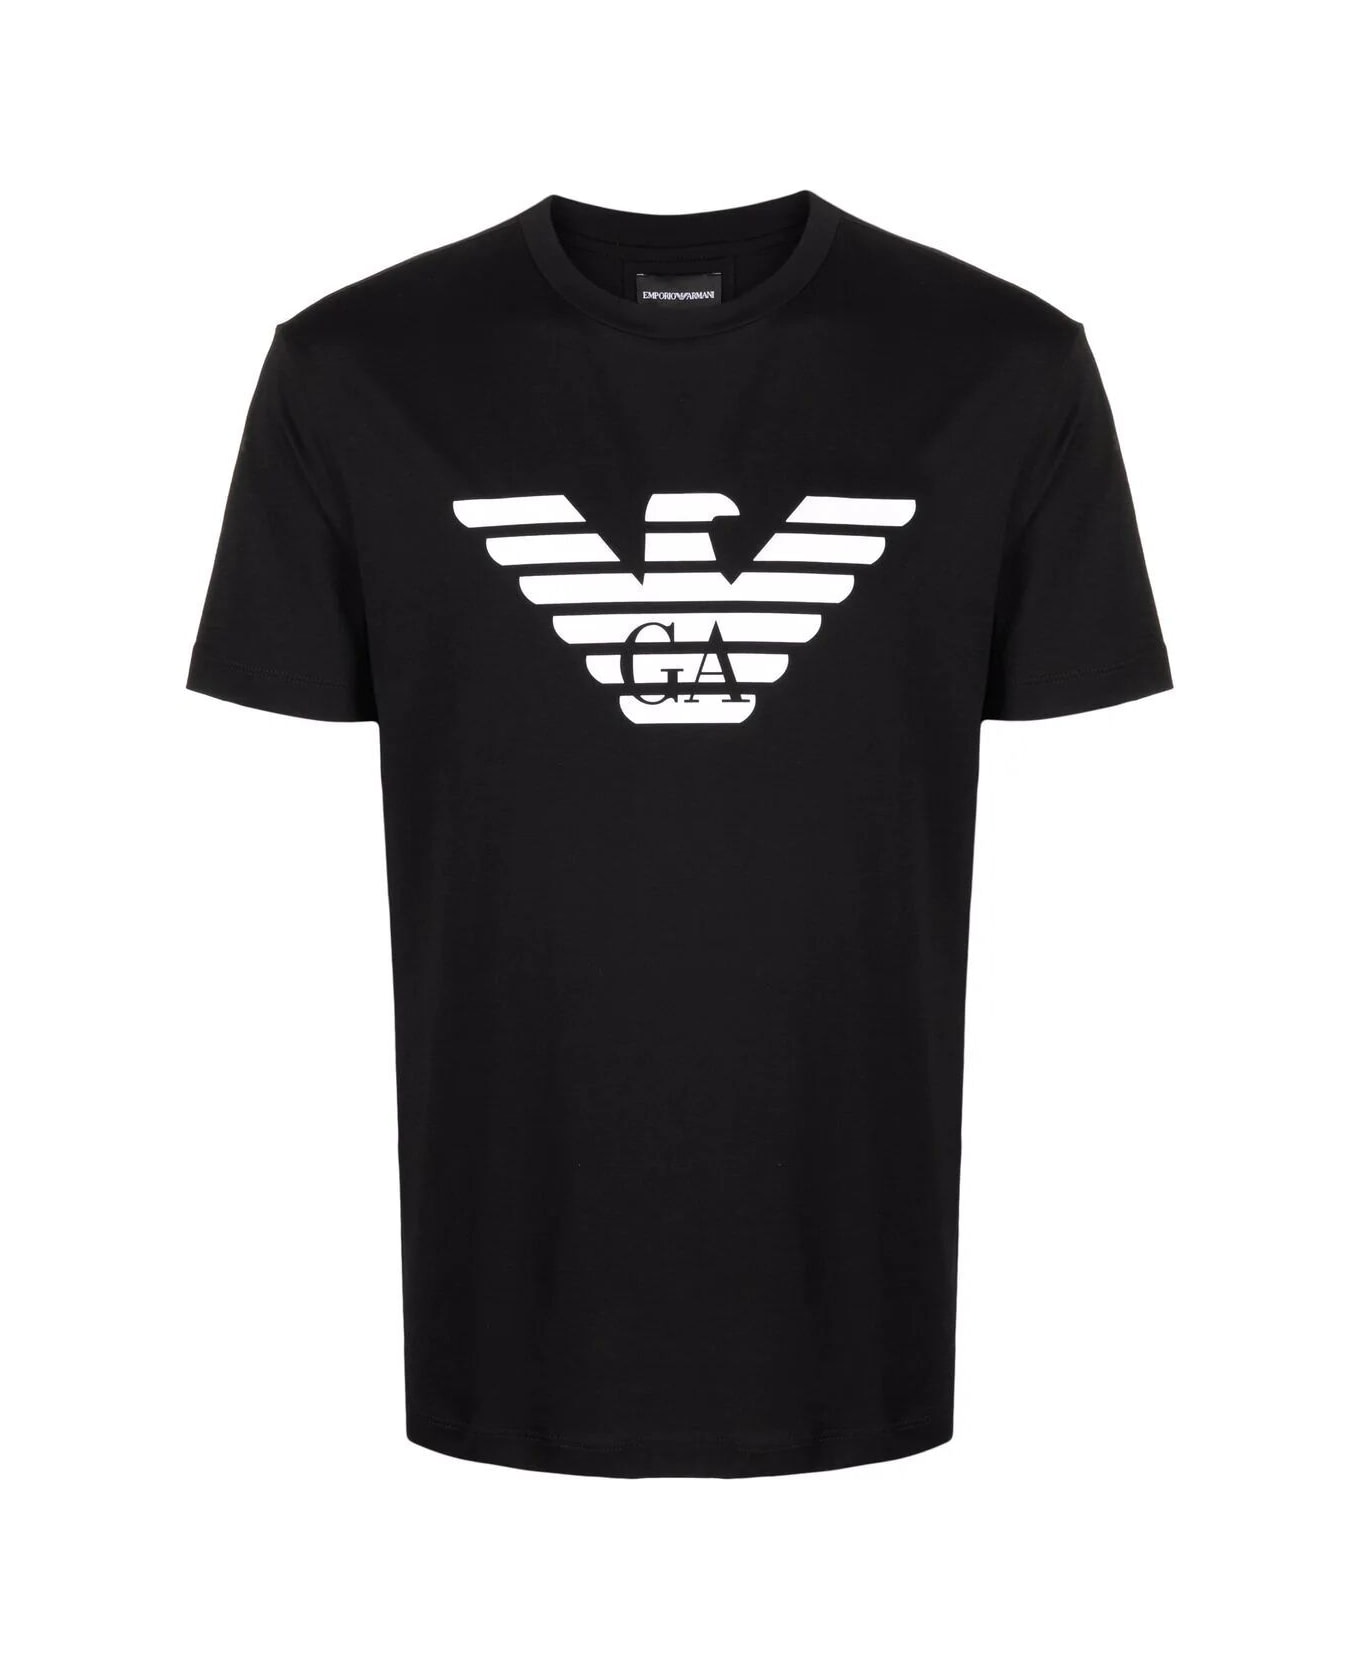 Emporio Armani T-shirt - Eagle Black シャツ